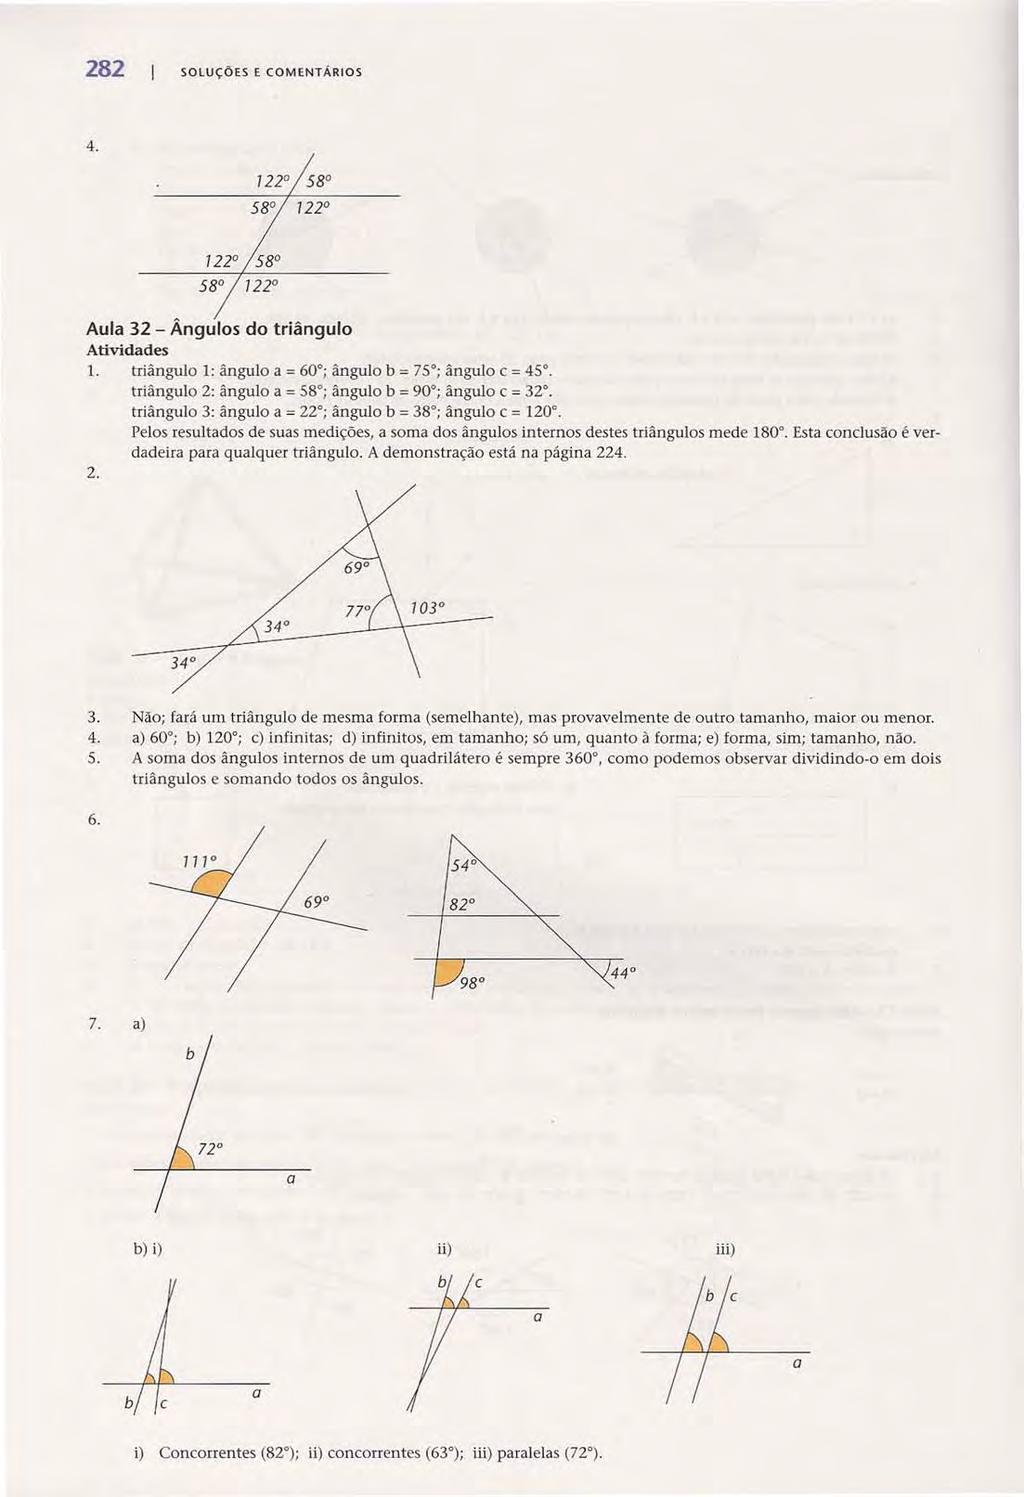 8 SOLUÇÕES E COMENTÁROS Acesse: http://fuvestibular.com.br/ 4. Aula 3 - Ângulos do triângulo 1. triângulo 1: ângulo a = 60 ; ângulo b = 75 ; ângulo C = 45.